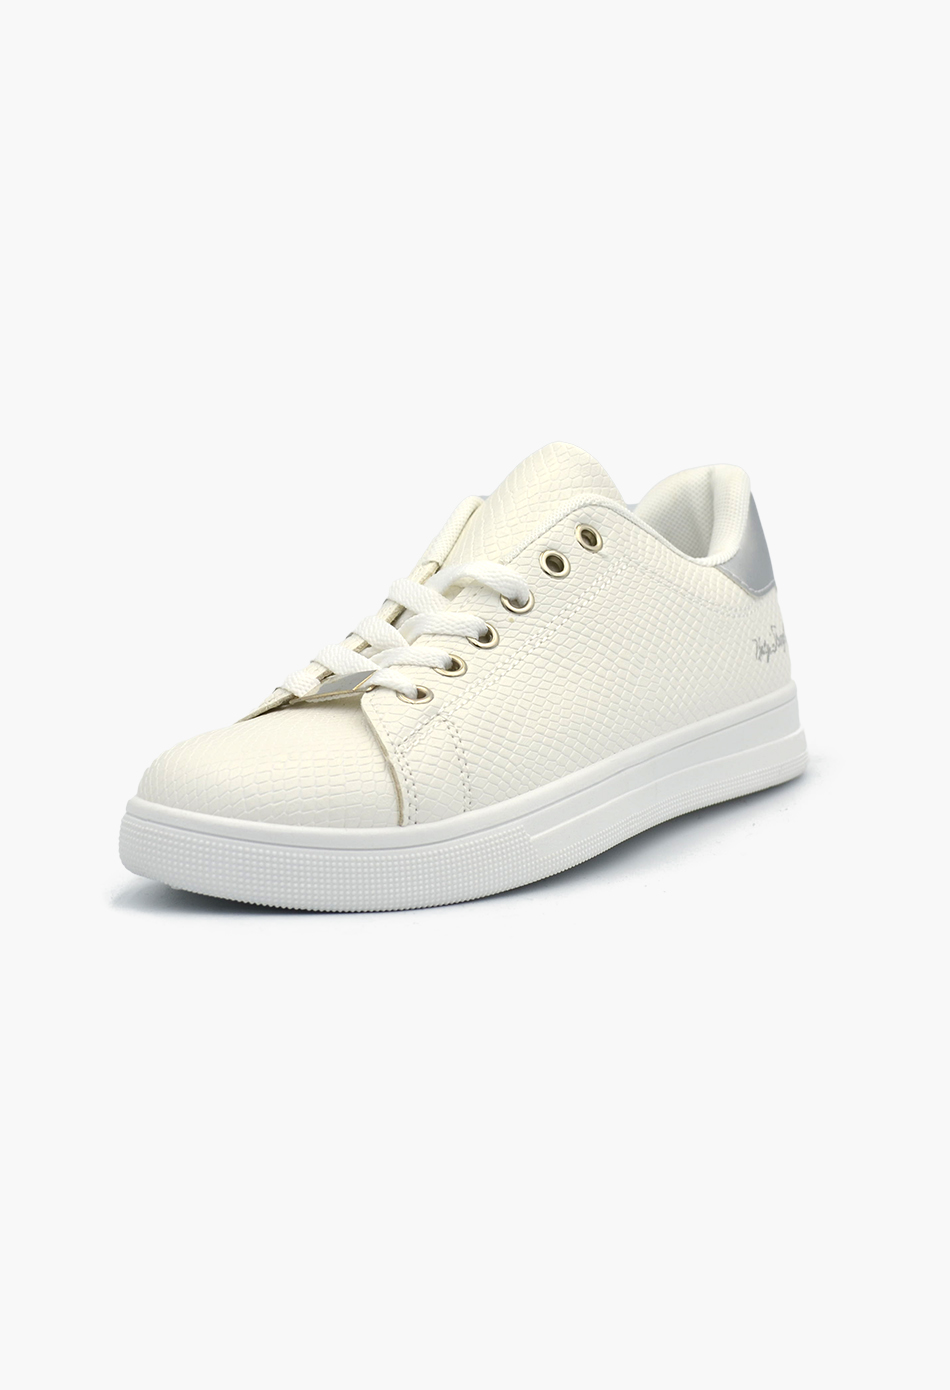 Γυναικεία Flatforms Sneakers Λευκό / OX2528-silver Γυναικεία Αθλητικά και Sneakers joya.gr